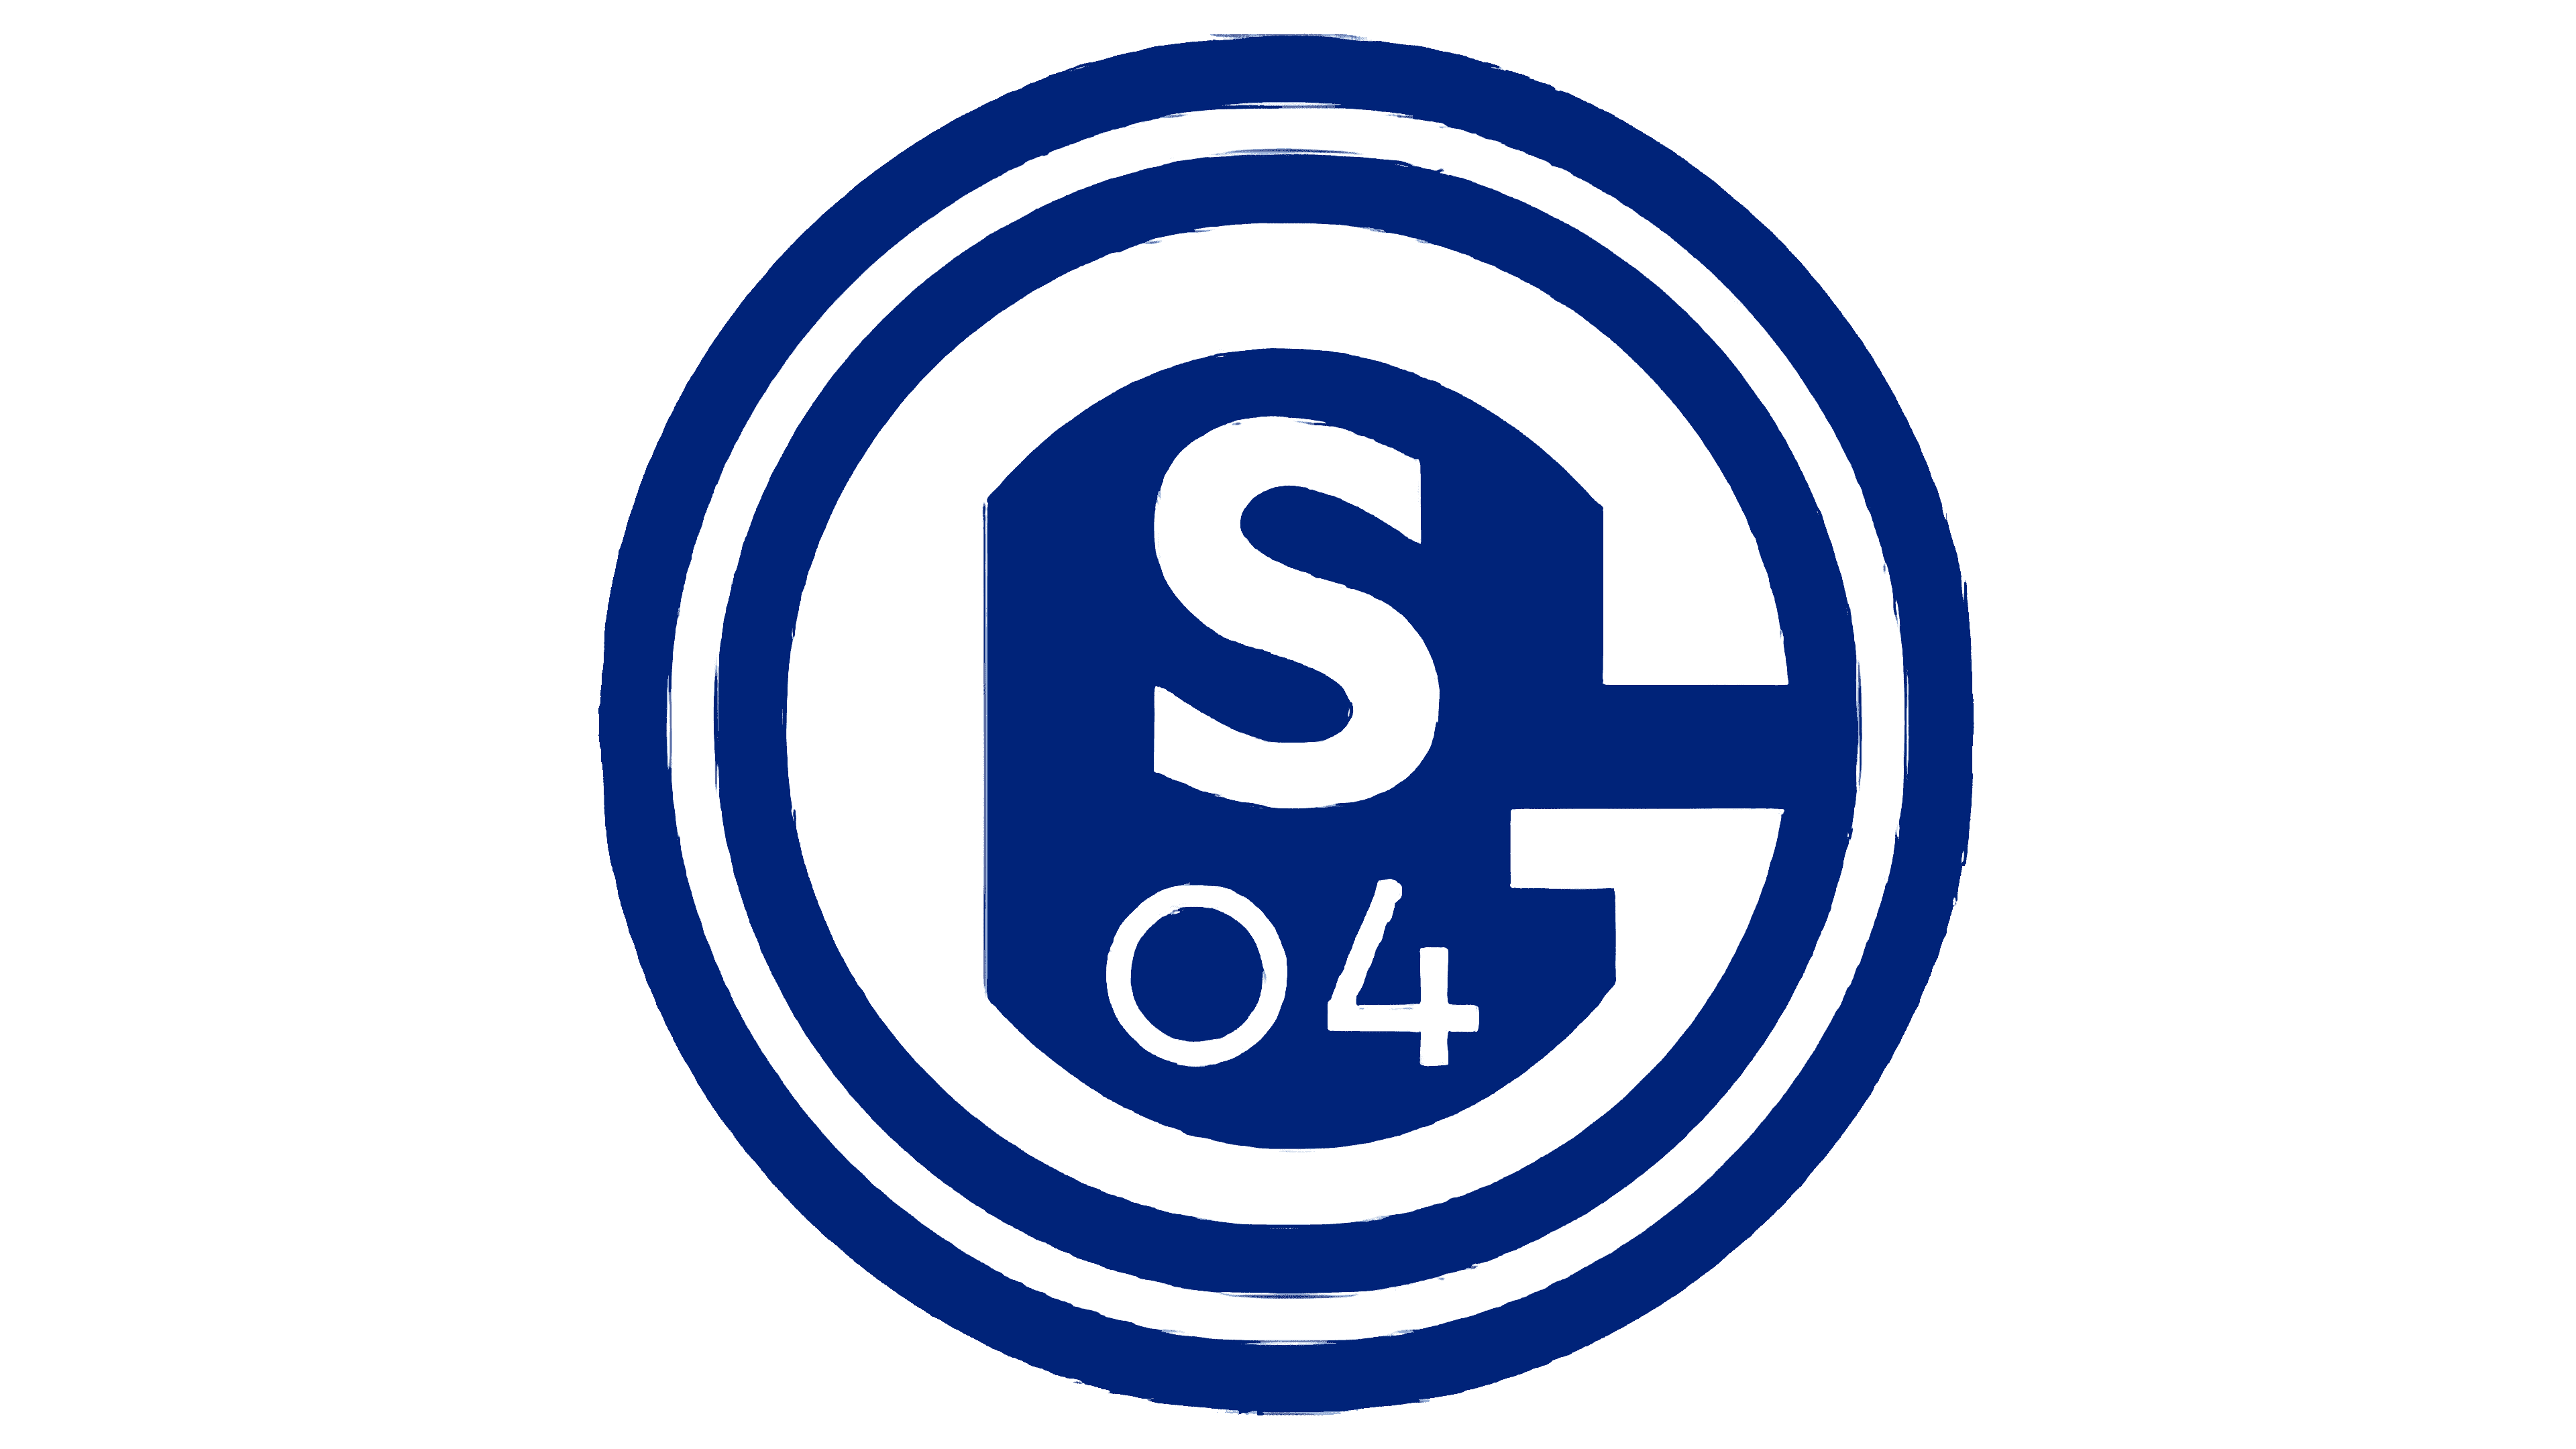 FC Schalke 04 Fussball Logo 2 Pin !! 